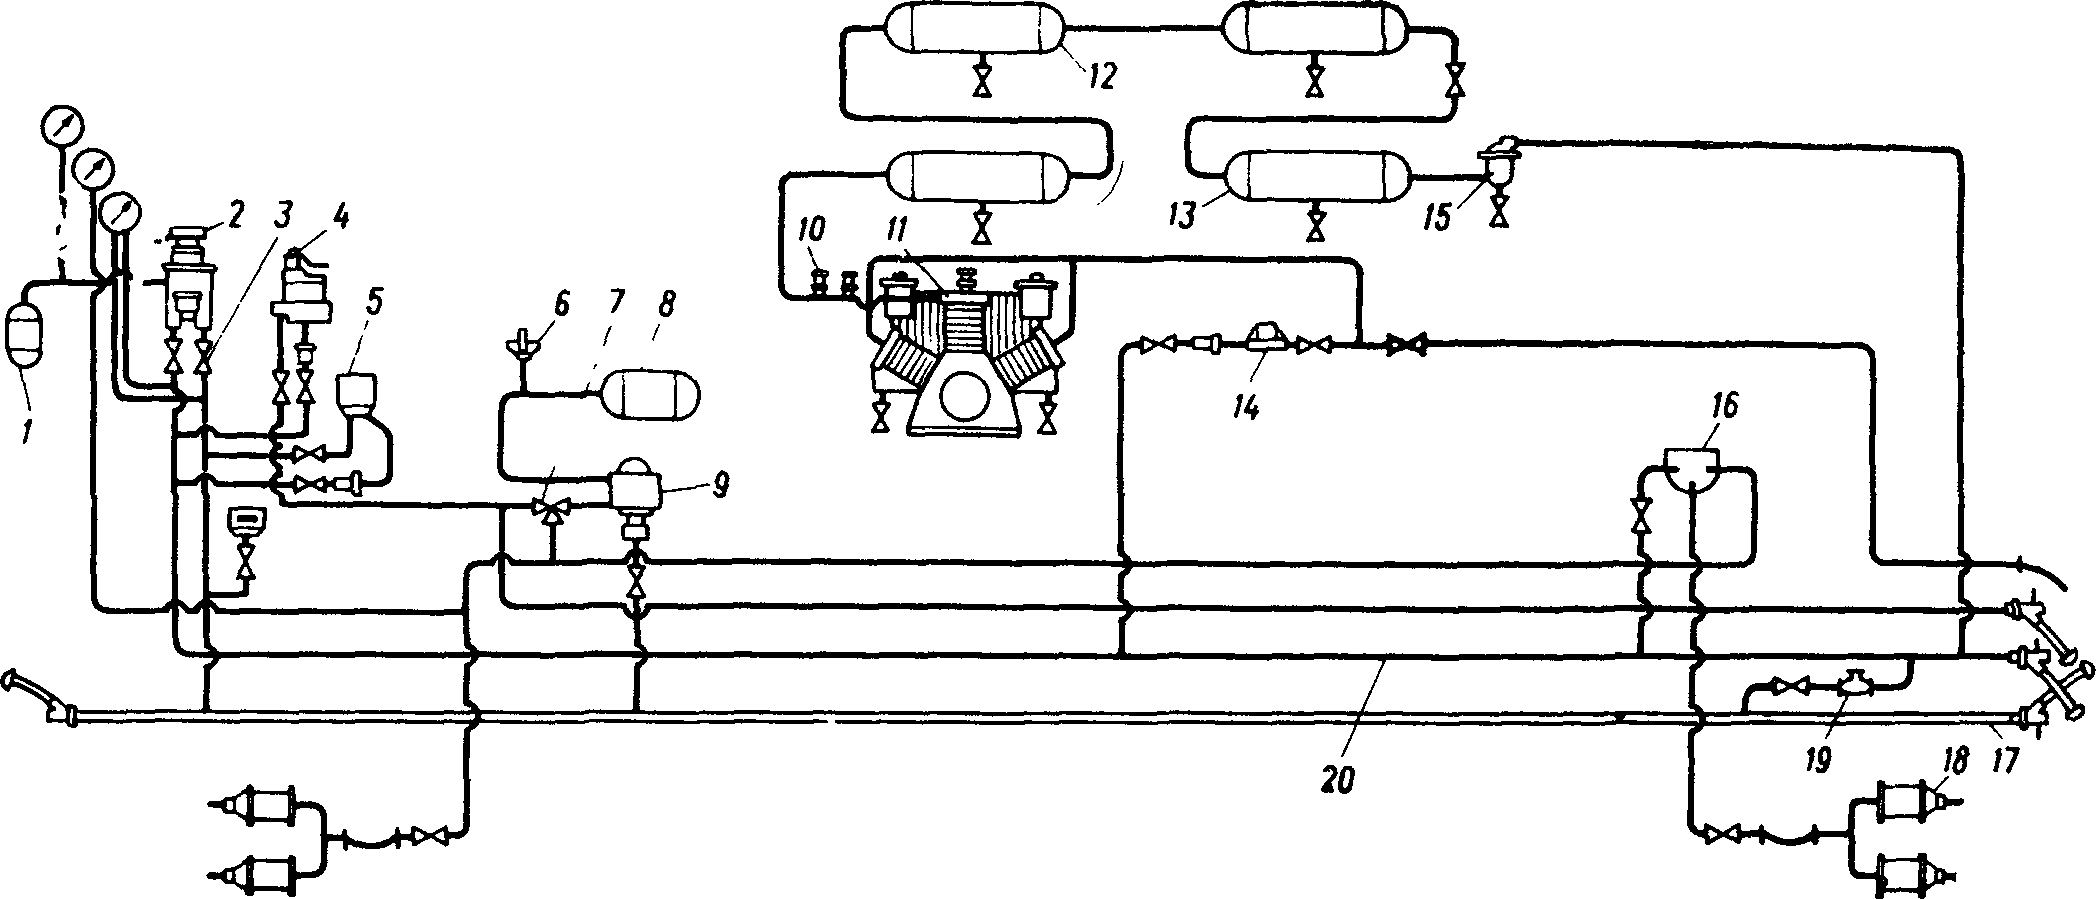 Пневматическая схема тормозного оборудования тепловоза ТЭ7